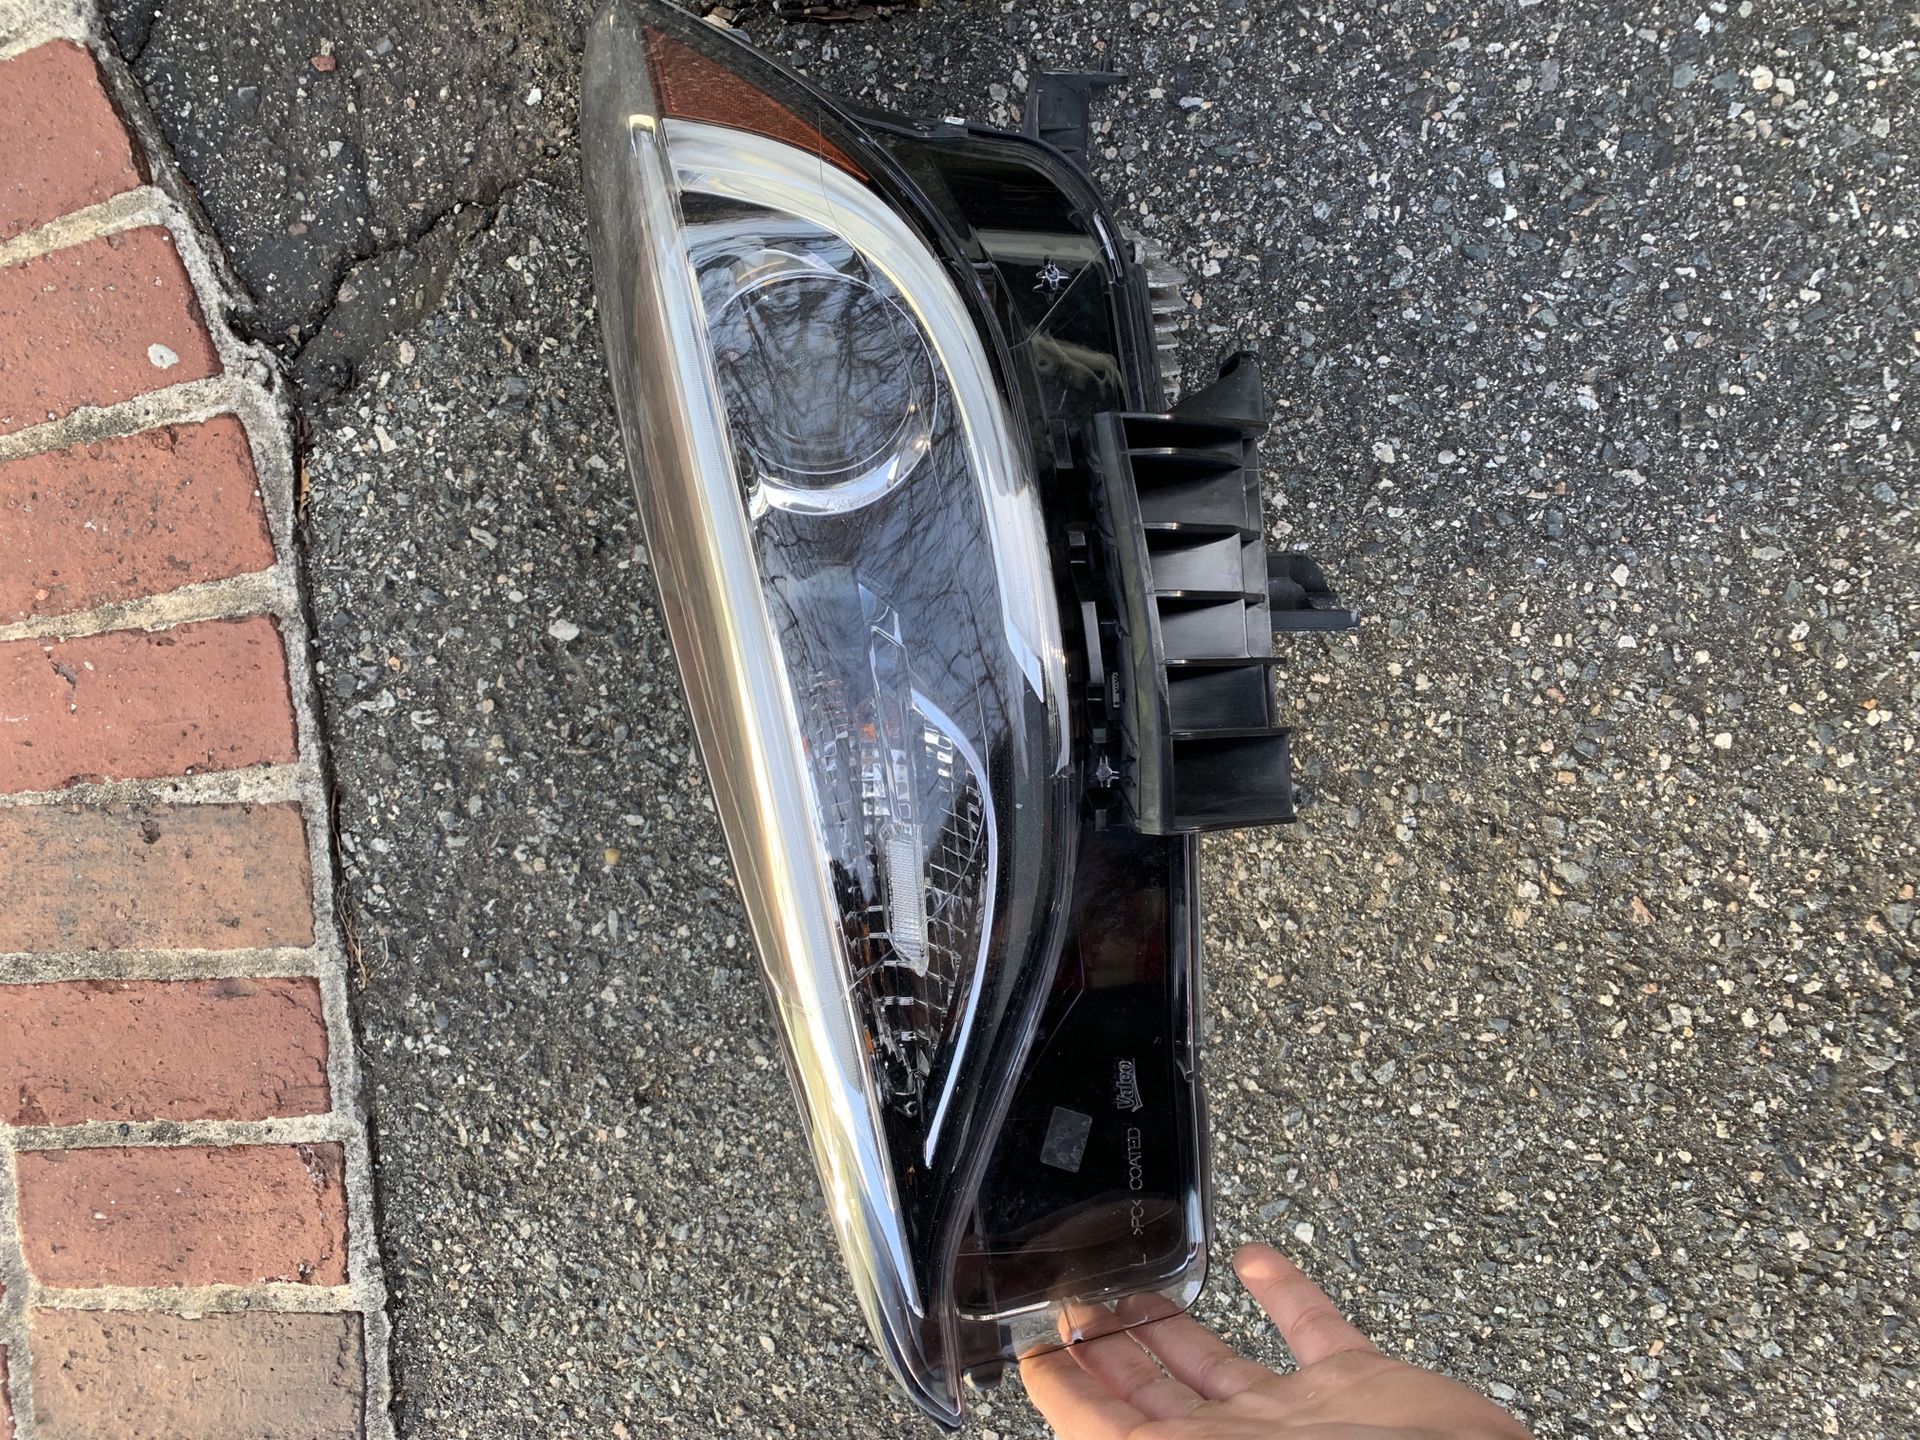 2018/17 infinity qx30 left headlamp! Genuine infinity part!